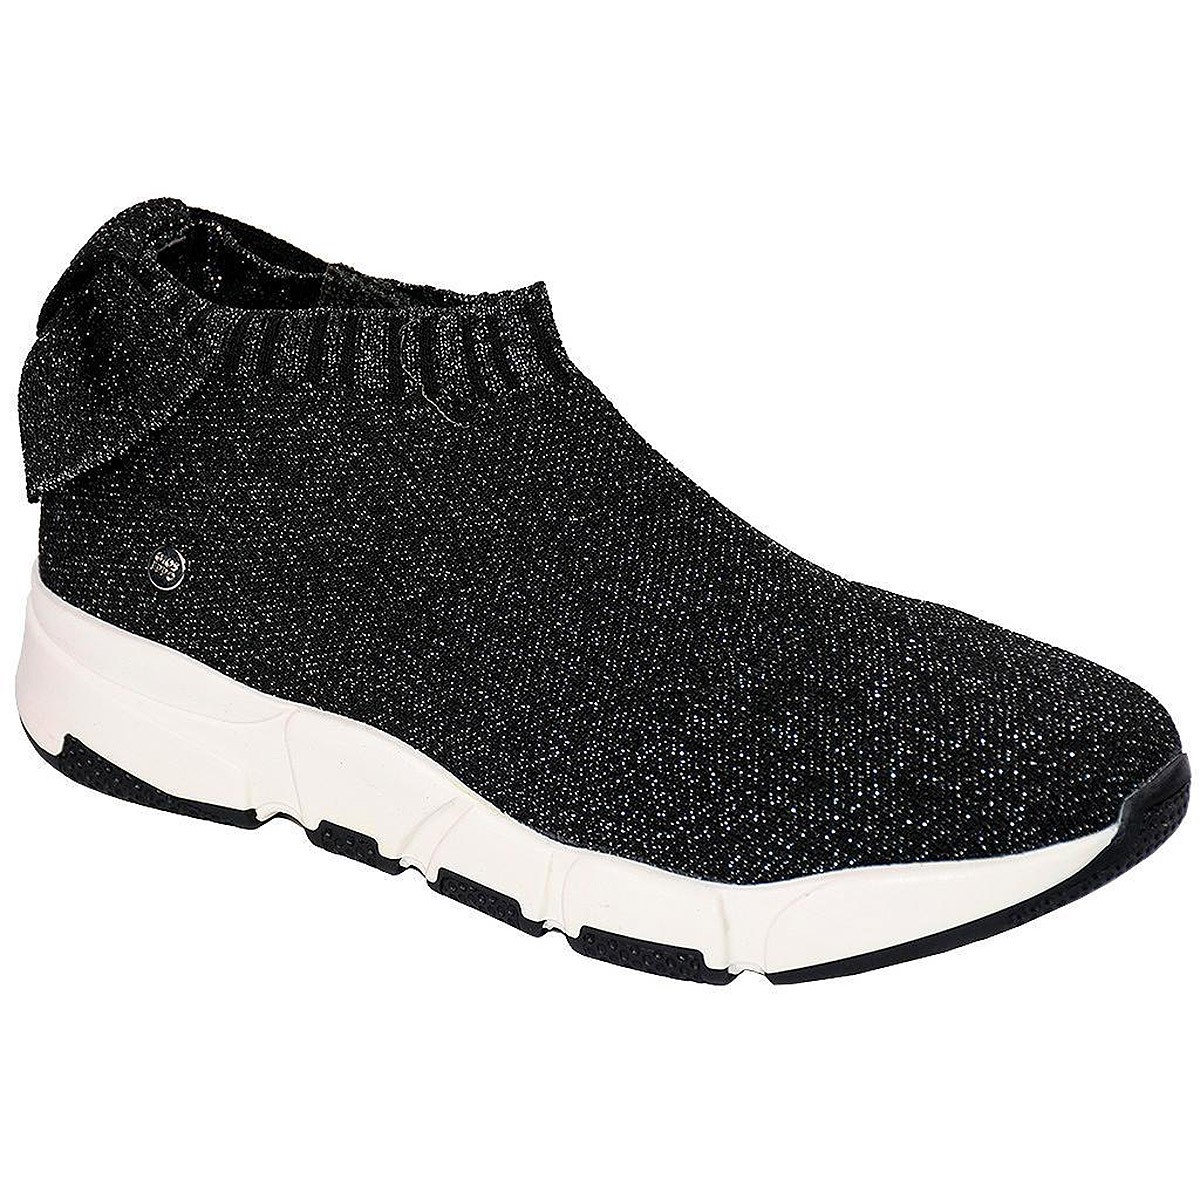 56326 Gioseppo Sneaker Comprar Sneaker estilo calcetín ajustable. Plantilla látex confortable y suela de caucho antideslizantes 